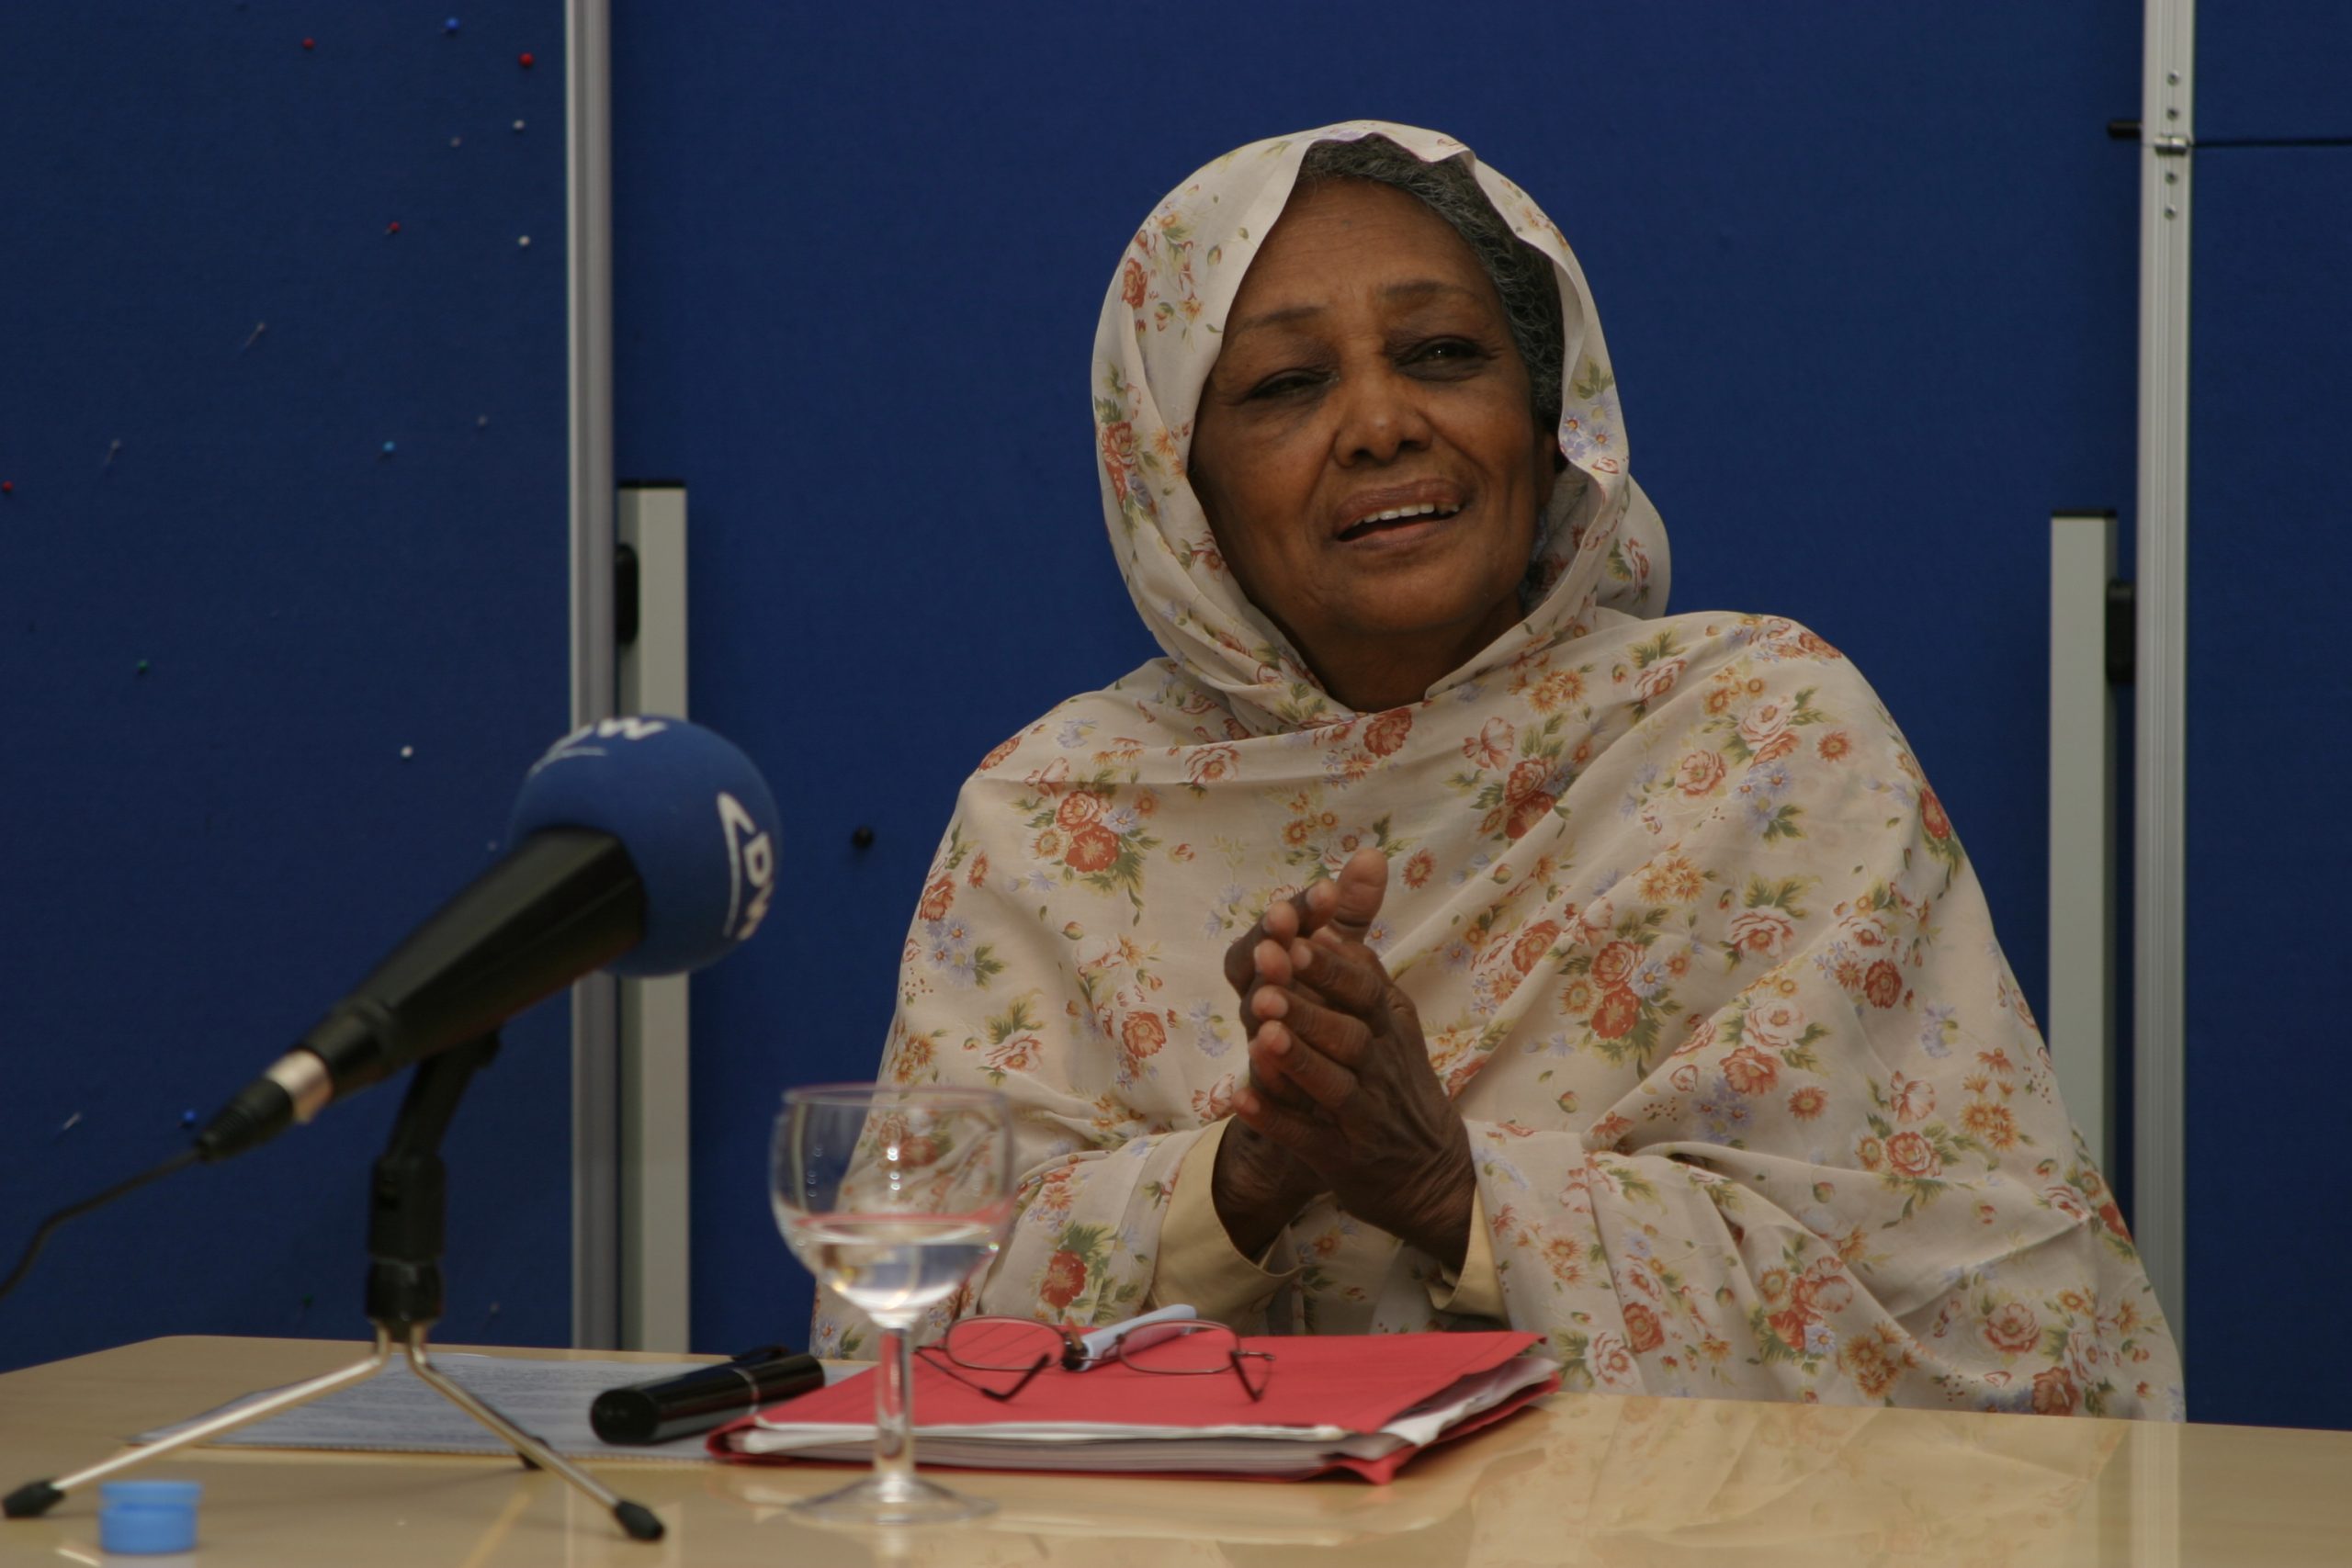 مؤسسة ابن رشد للفكر الحر في المانيا تنعى وفاة الناشطة السياسية والحقوقية السودانية البارزة السيدة فاطمة أحمد إبراهيم